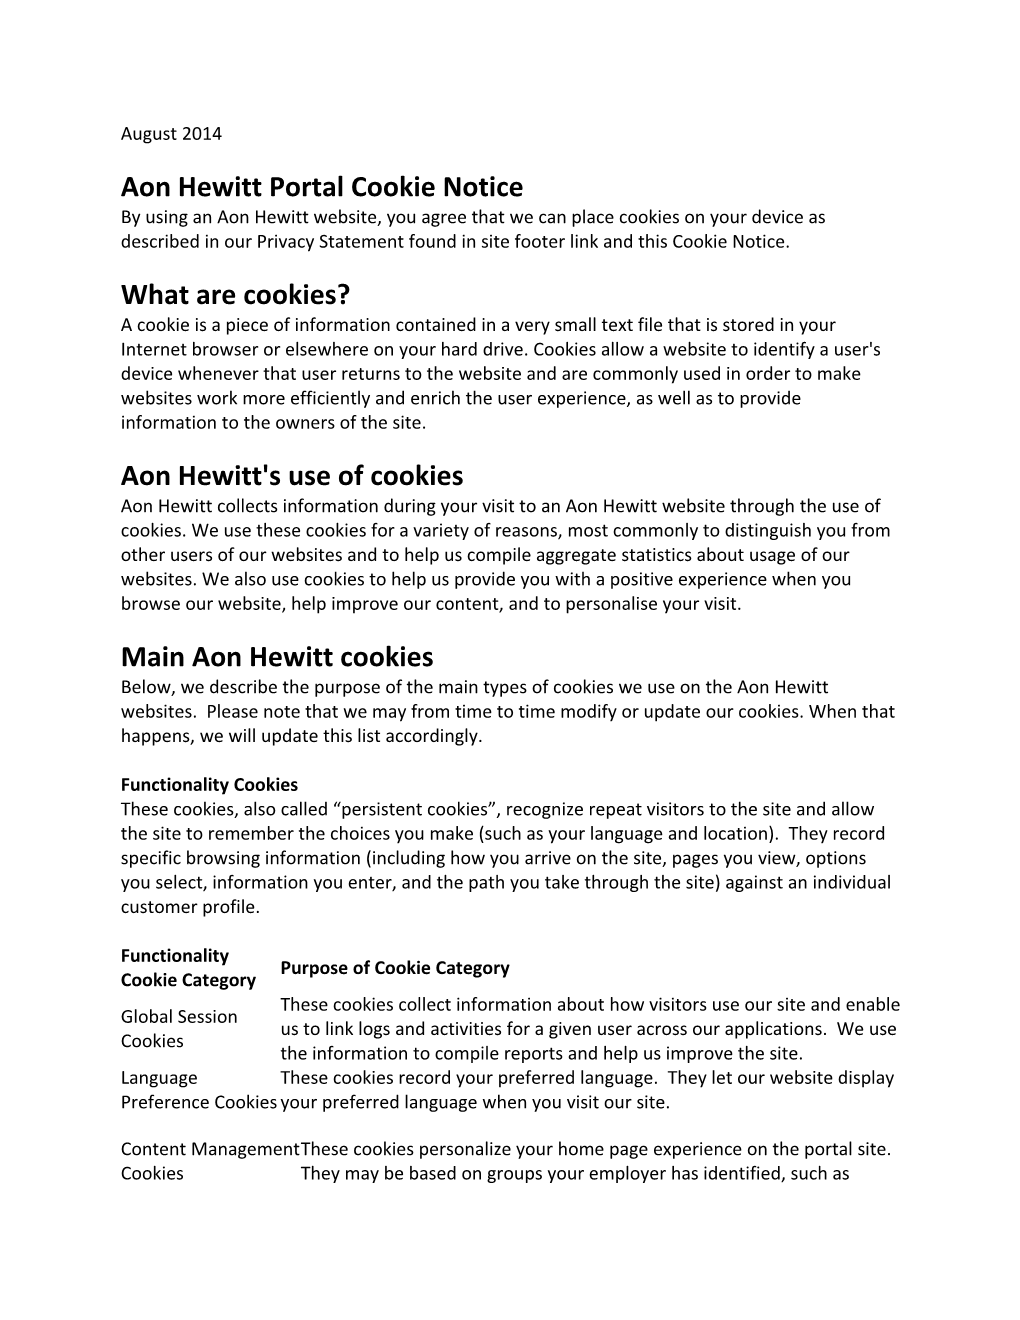 Aon Hewitt Portal Cookie Notice